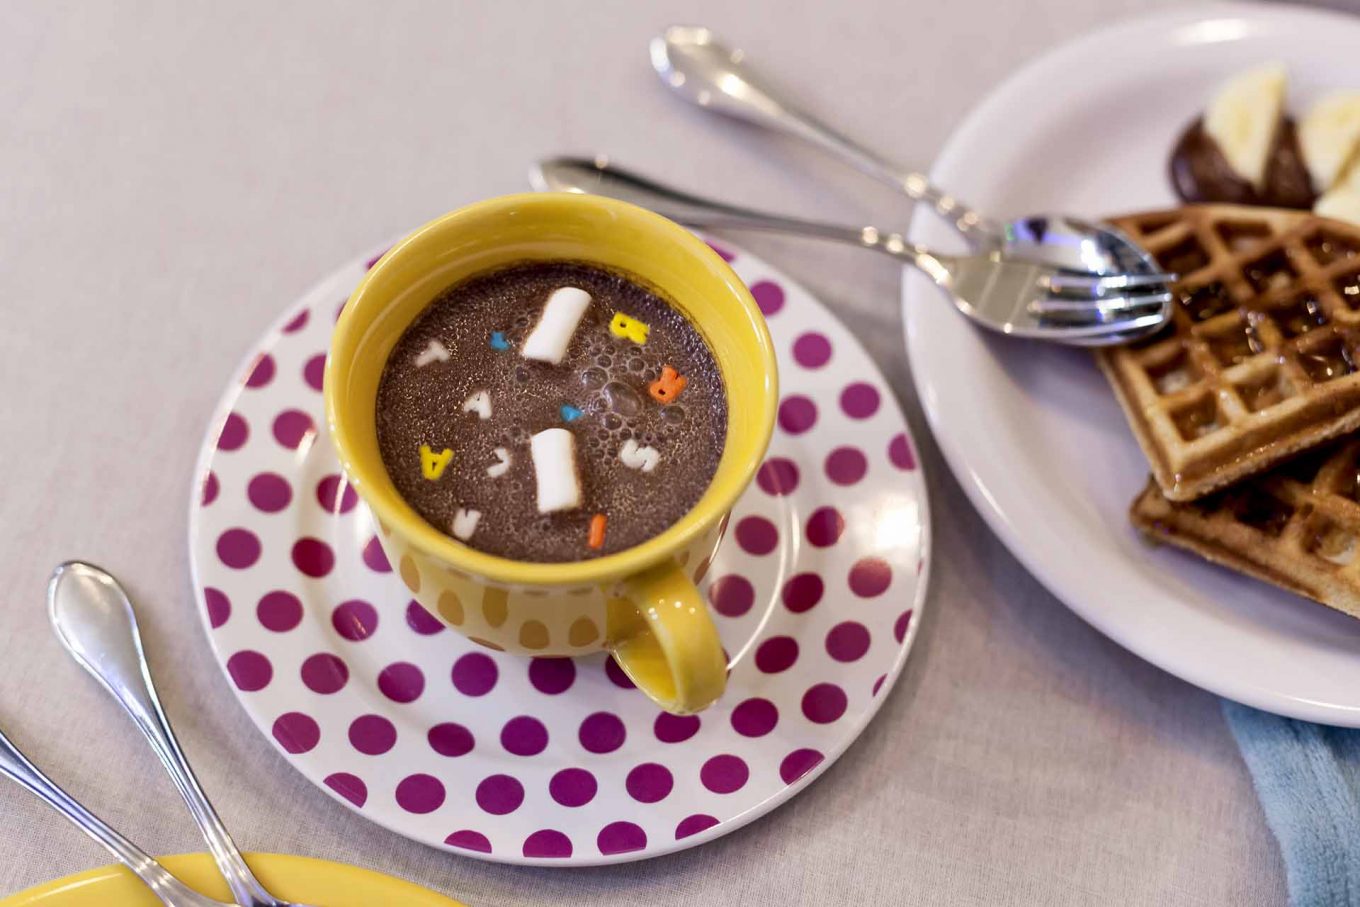 Imagem: Para complementar o café da manhã, o chocolate quente foi servido e decorado com confeitos e marshmallows. Foto: Raphael Günther/Bespoke Content.